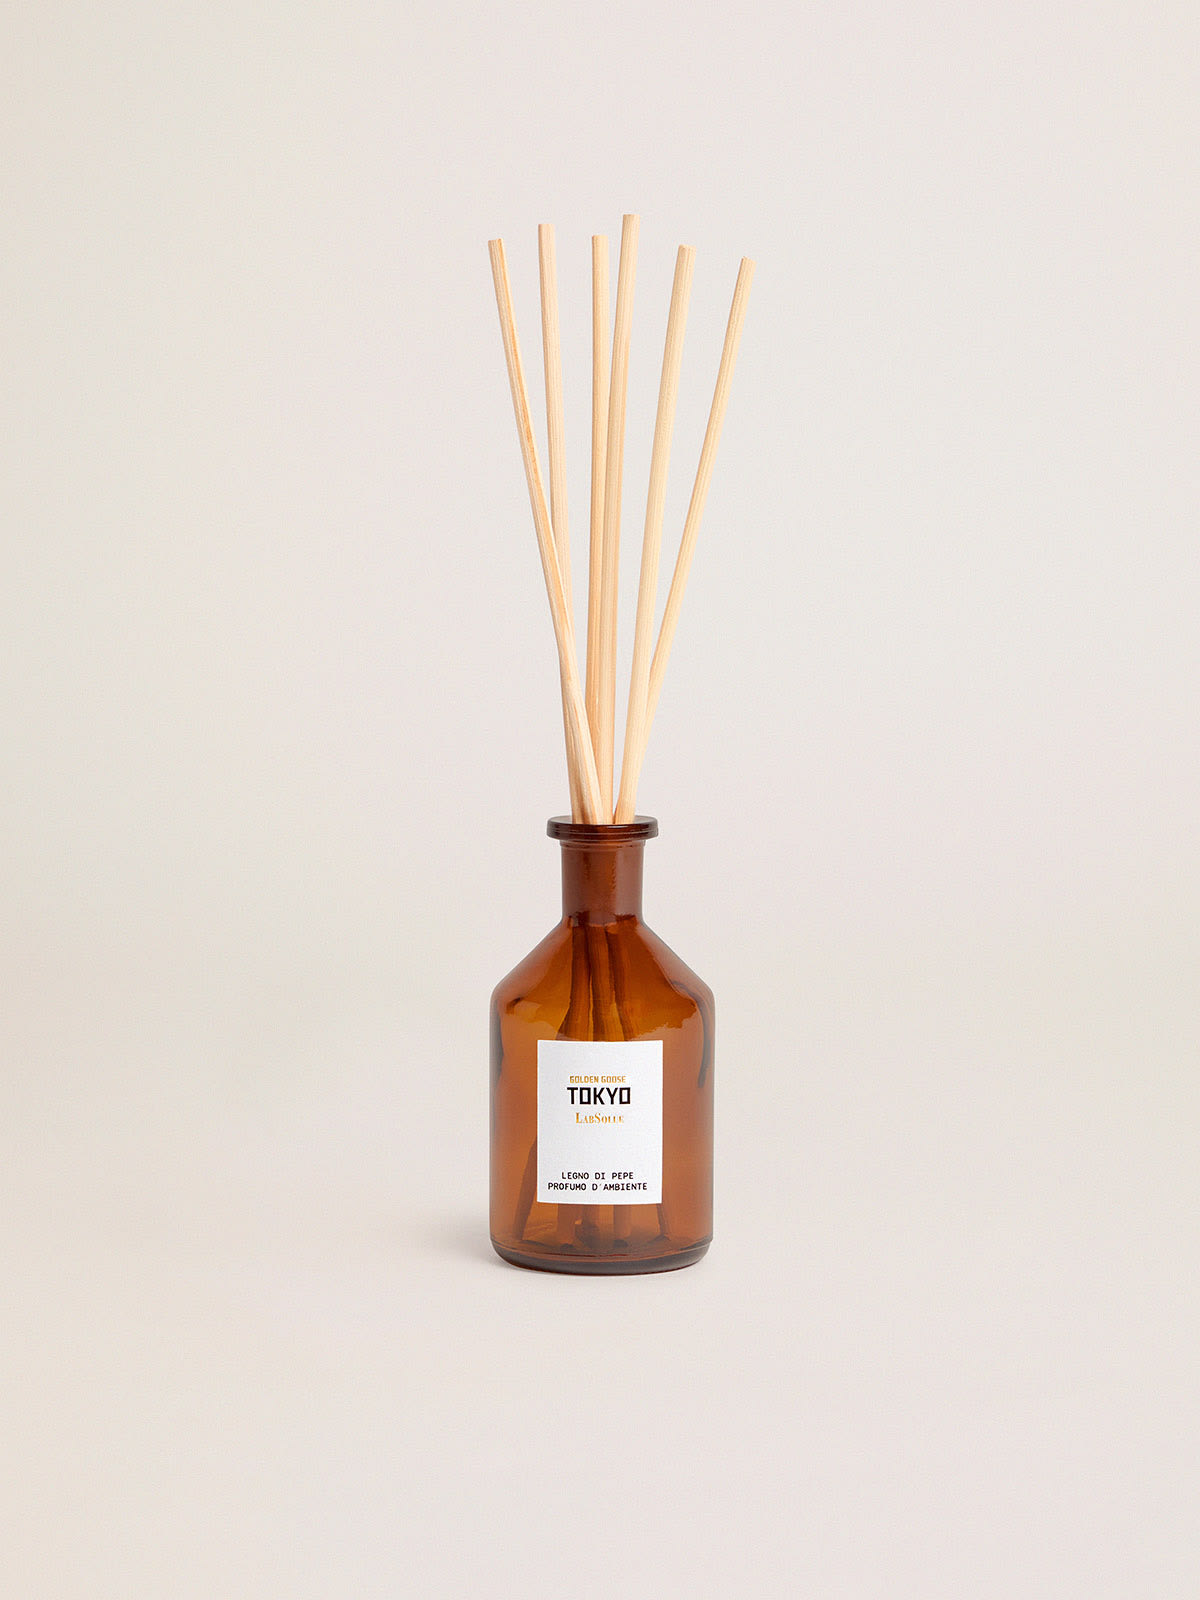 Golden Goose - Tokyo Essence bois de poivre parfum d’ambiance 100 ml in 